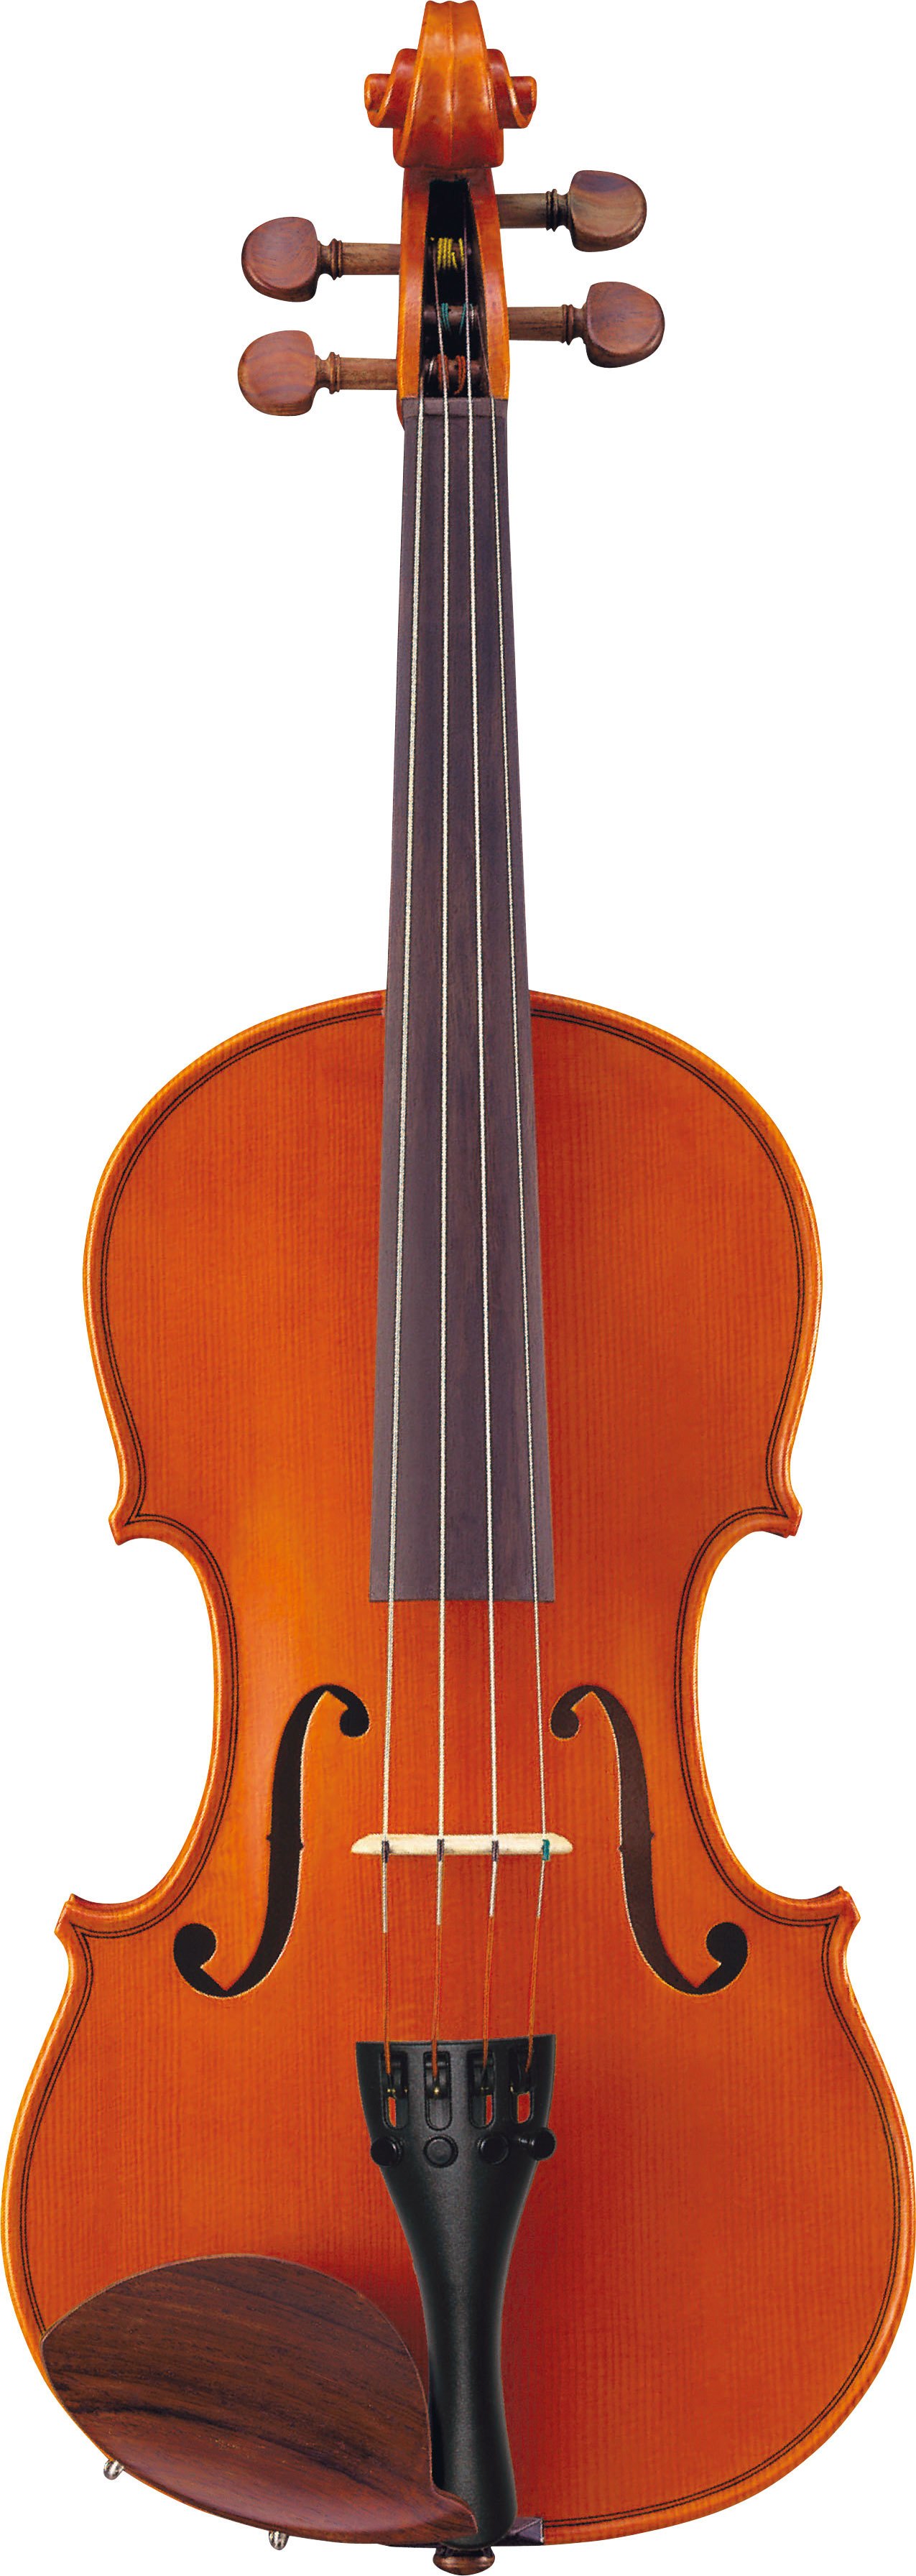 mrsilvertrumpet-av5-sc-yamaha-violin